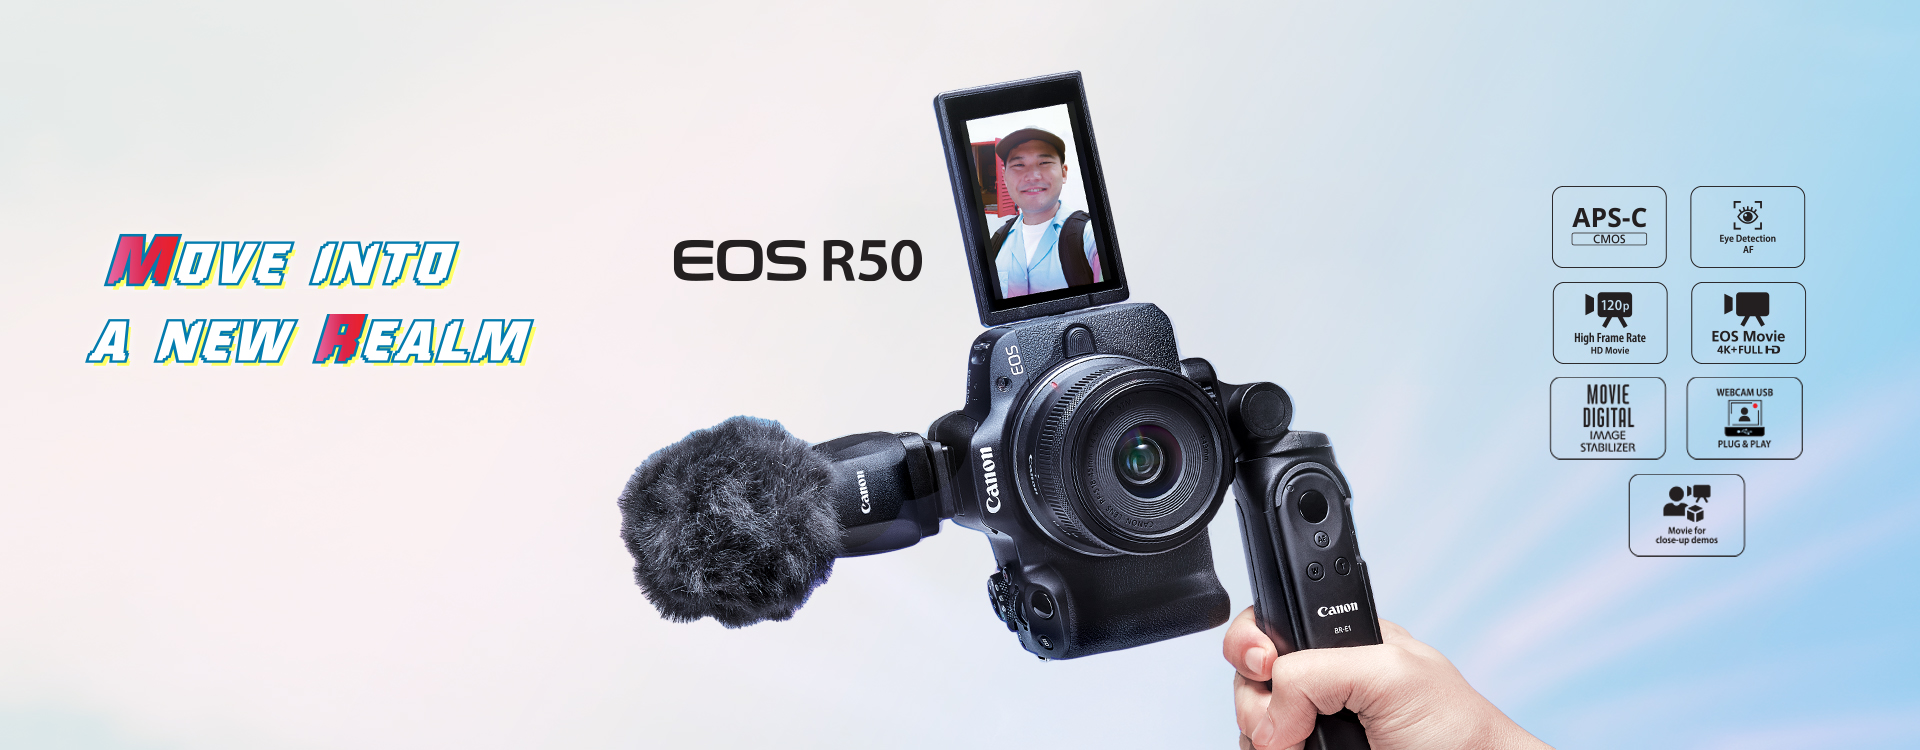 EOS R50